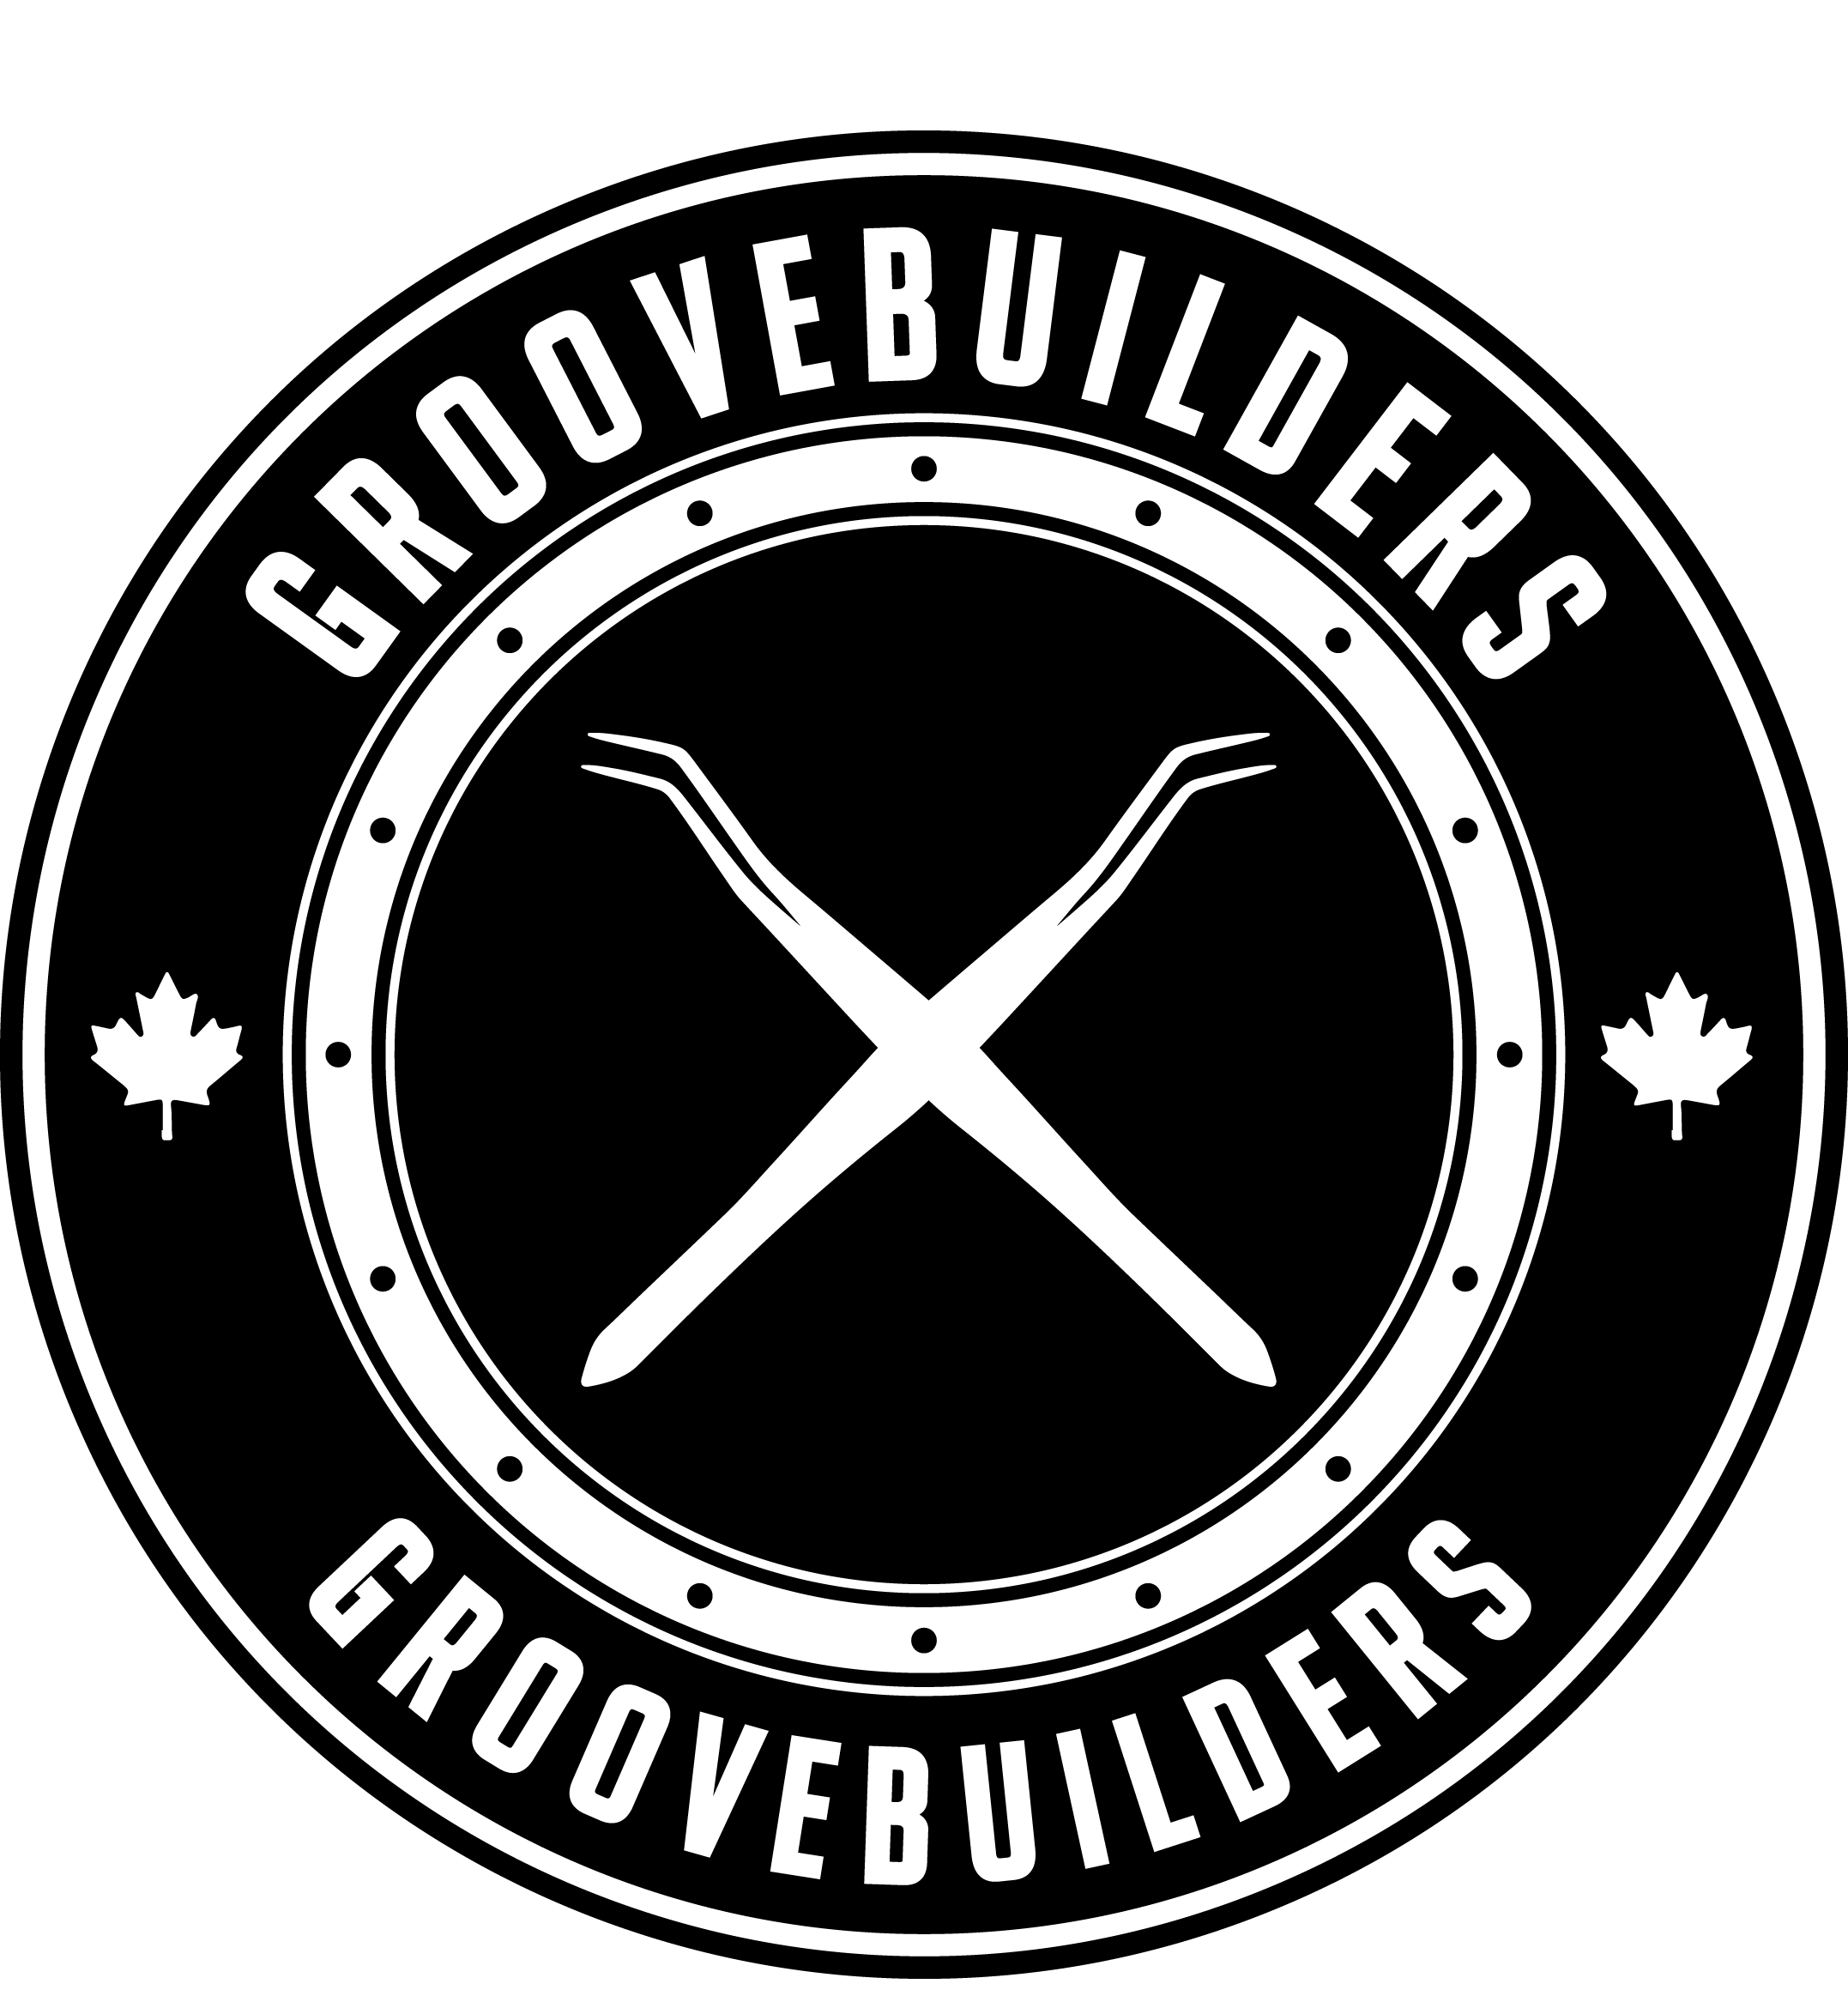 Groove Builders